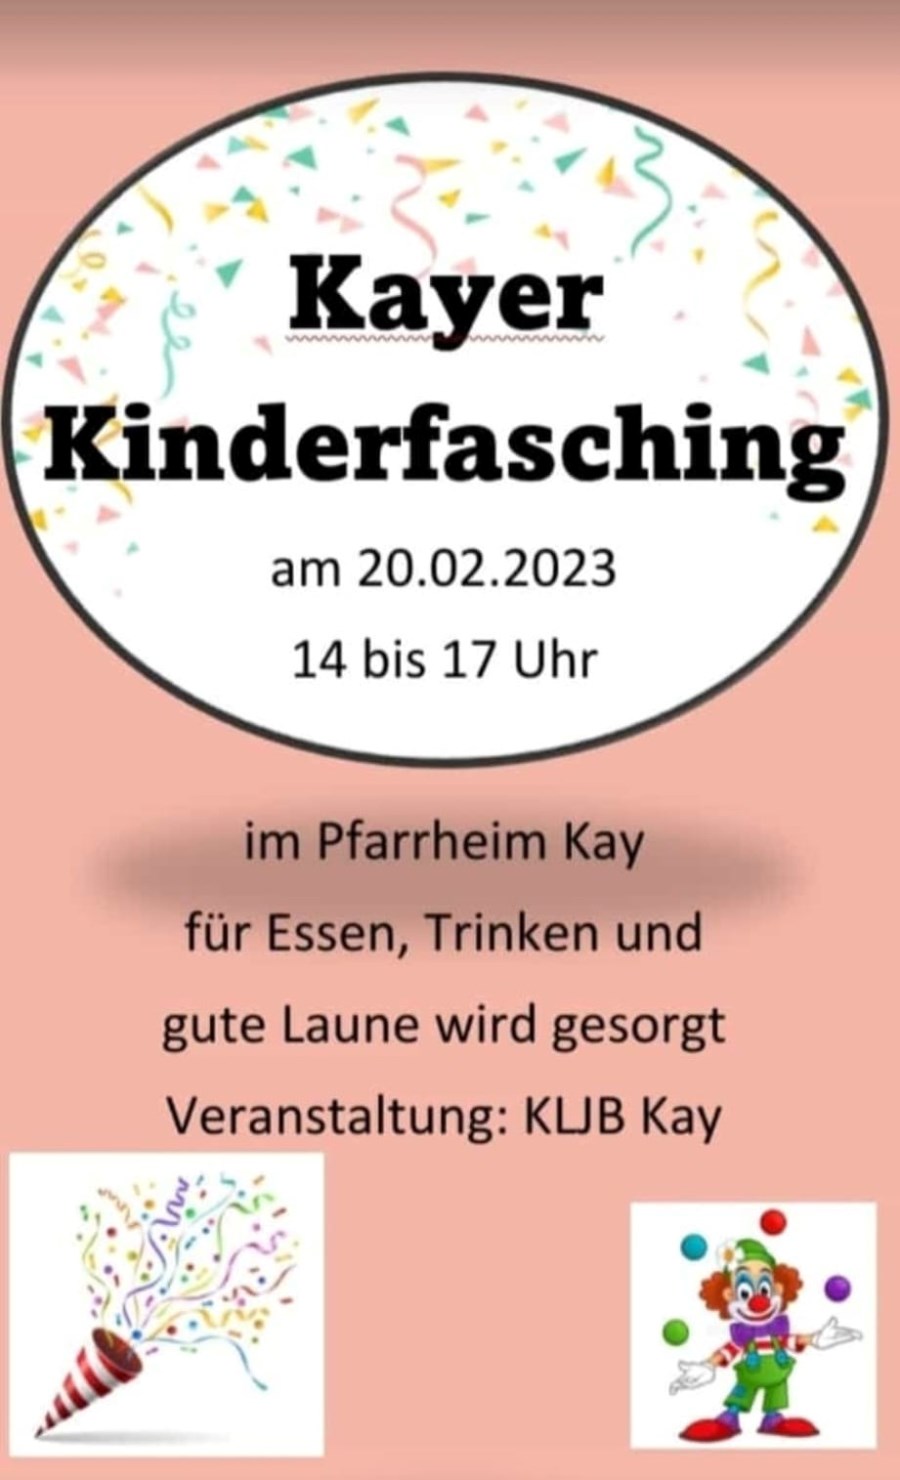 KinderfaschingKay2023